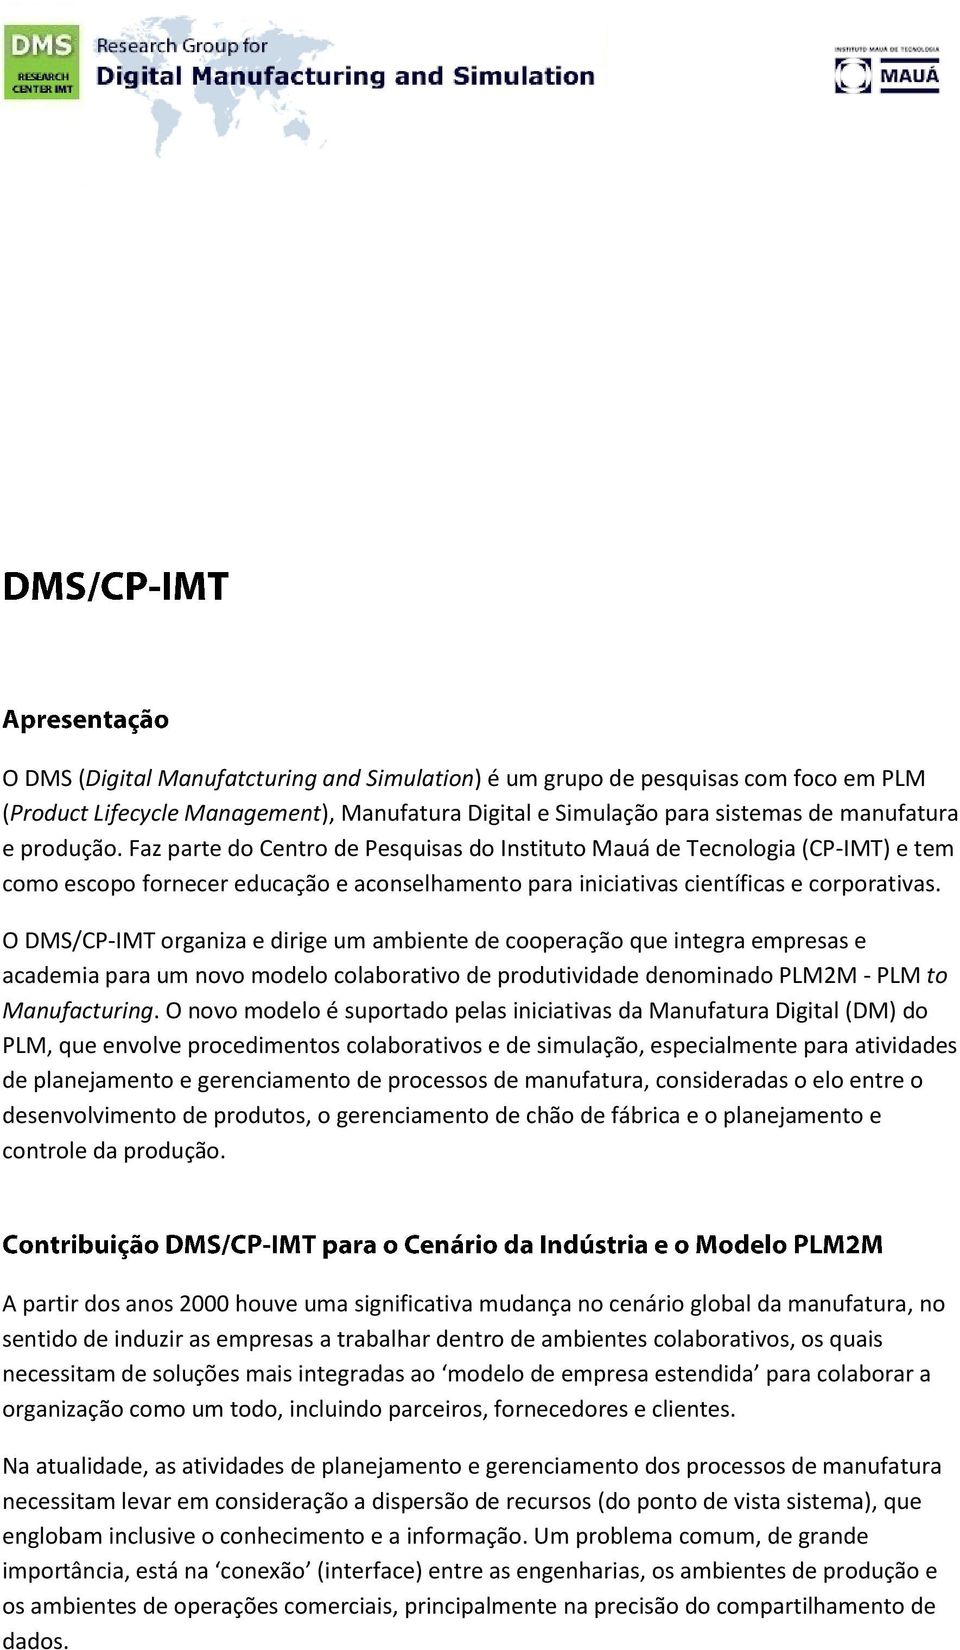 O DMS/CP-IMT organiza e dirige um ambiente de cooperação que integra empresas e academia para um novo modelo colaborativo de produtividade denominado PLM2M - PLM to Manufacturing.